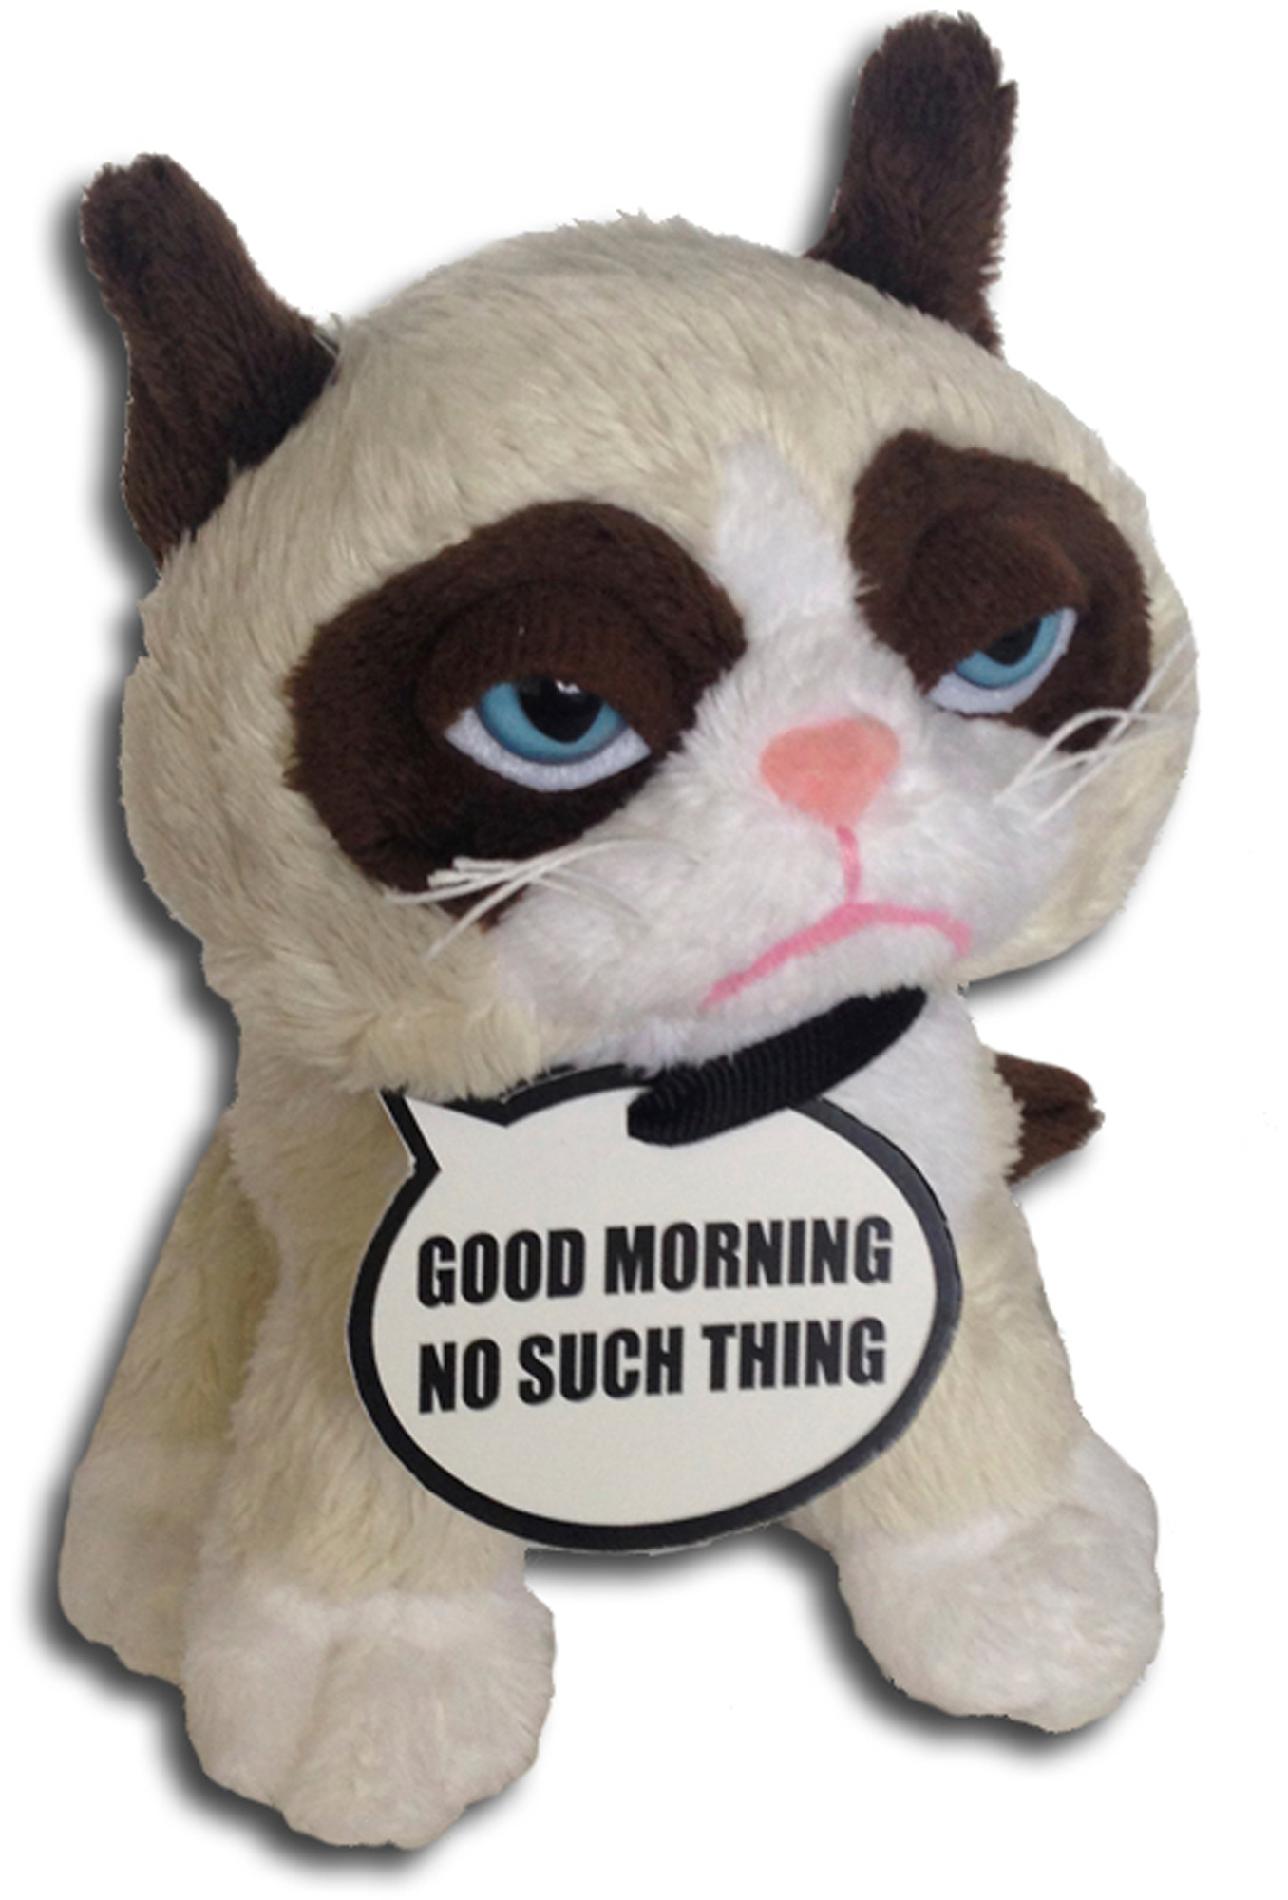 5" Grumpy Cat Plush Toy